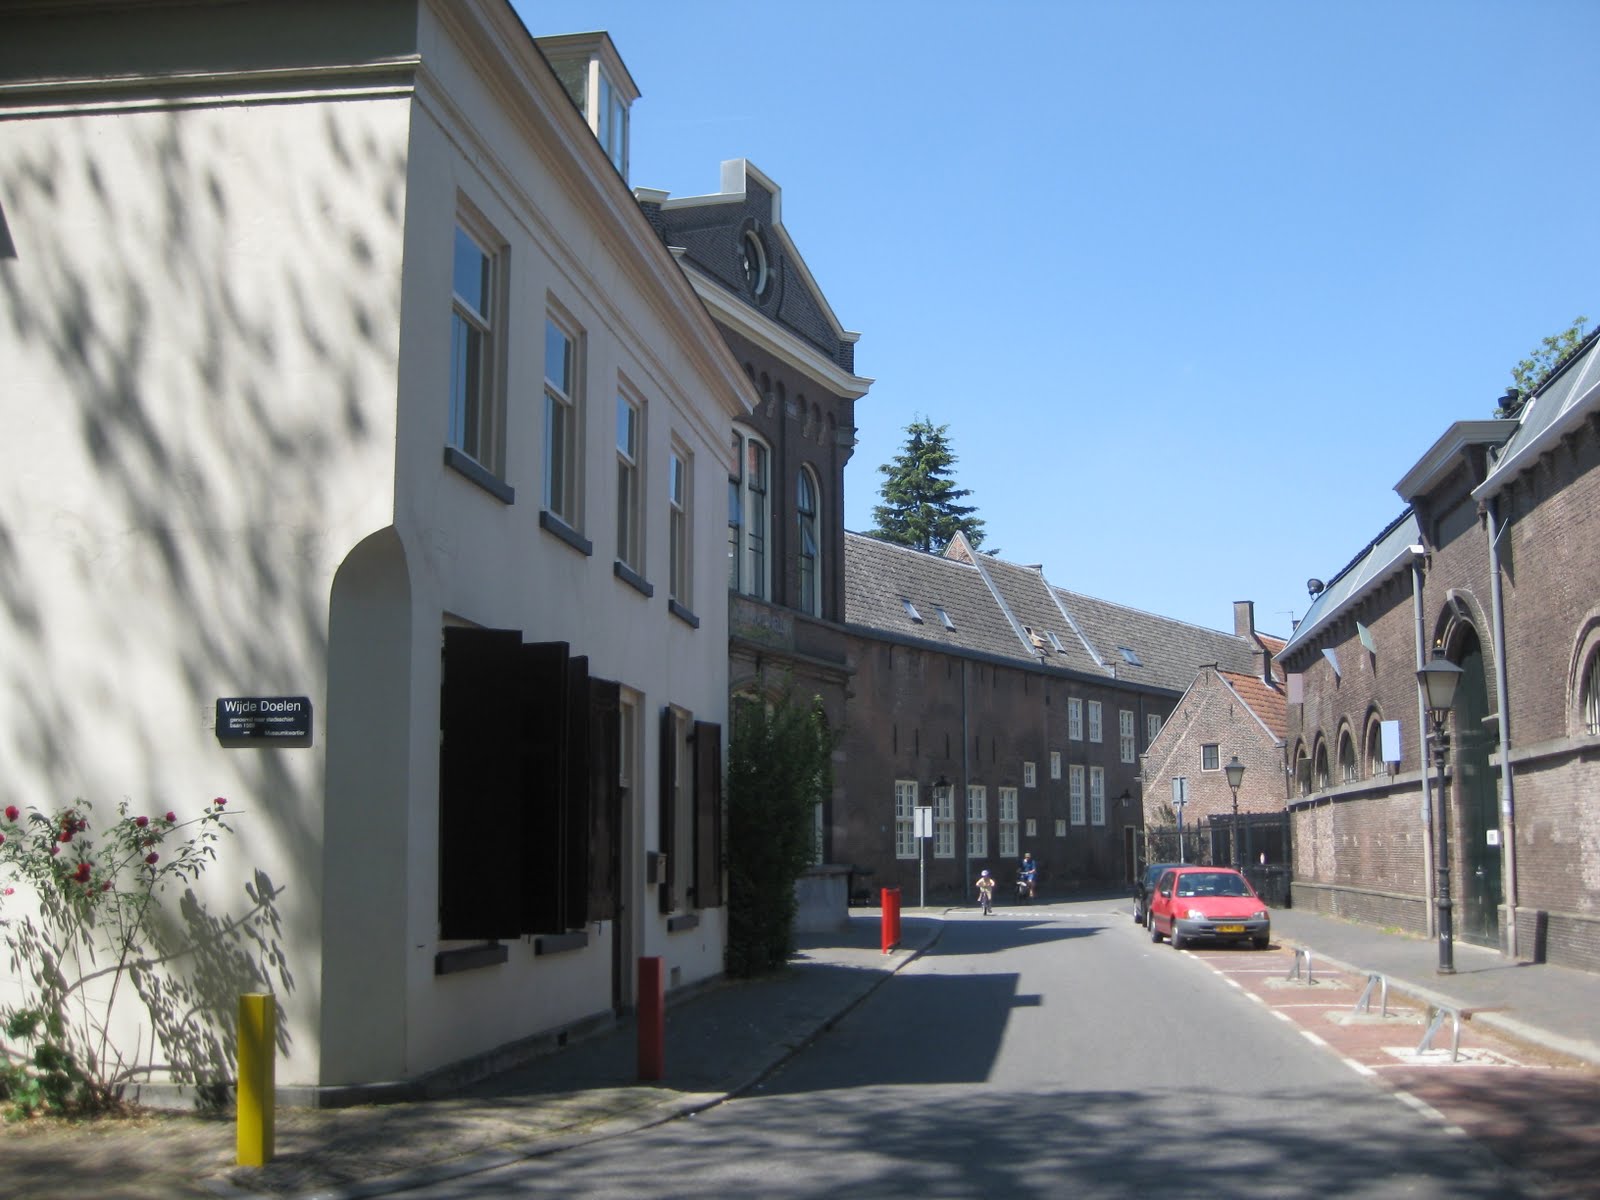 Streets of Utrecht